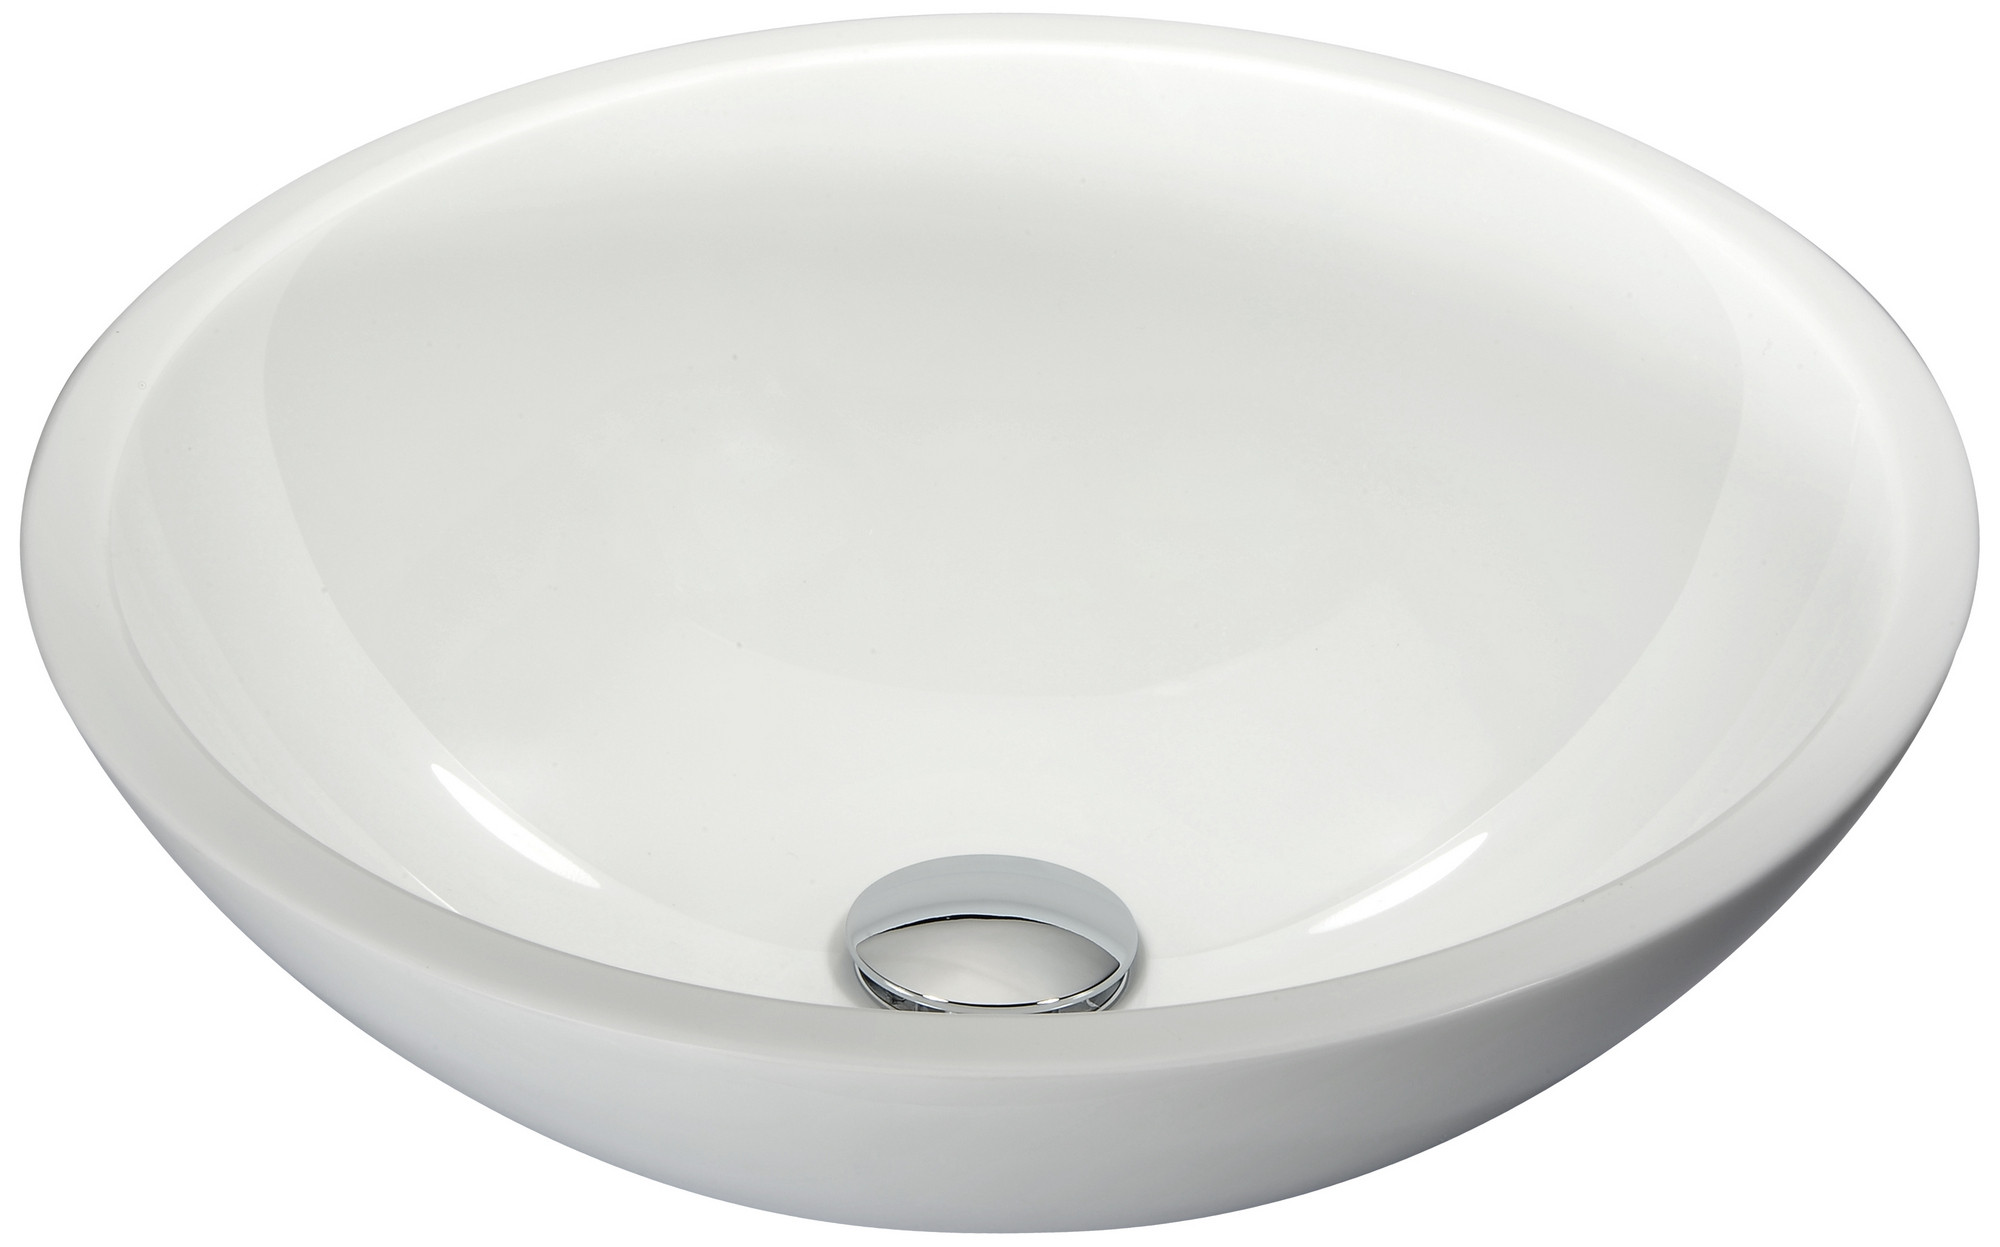 ANZZI LS-AZ032 Egret Series Round Glass Bathroom Vessel Sink In White